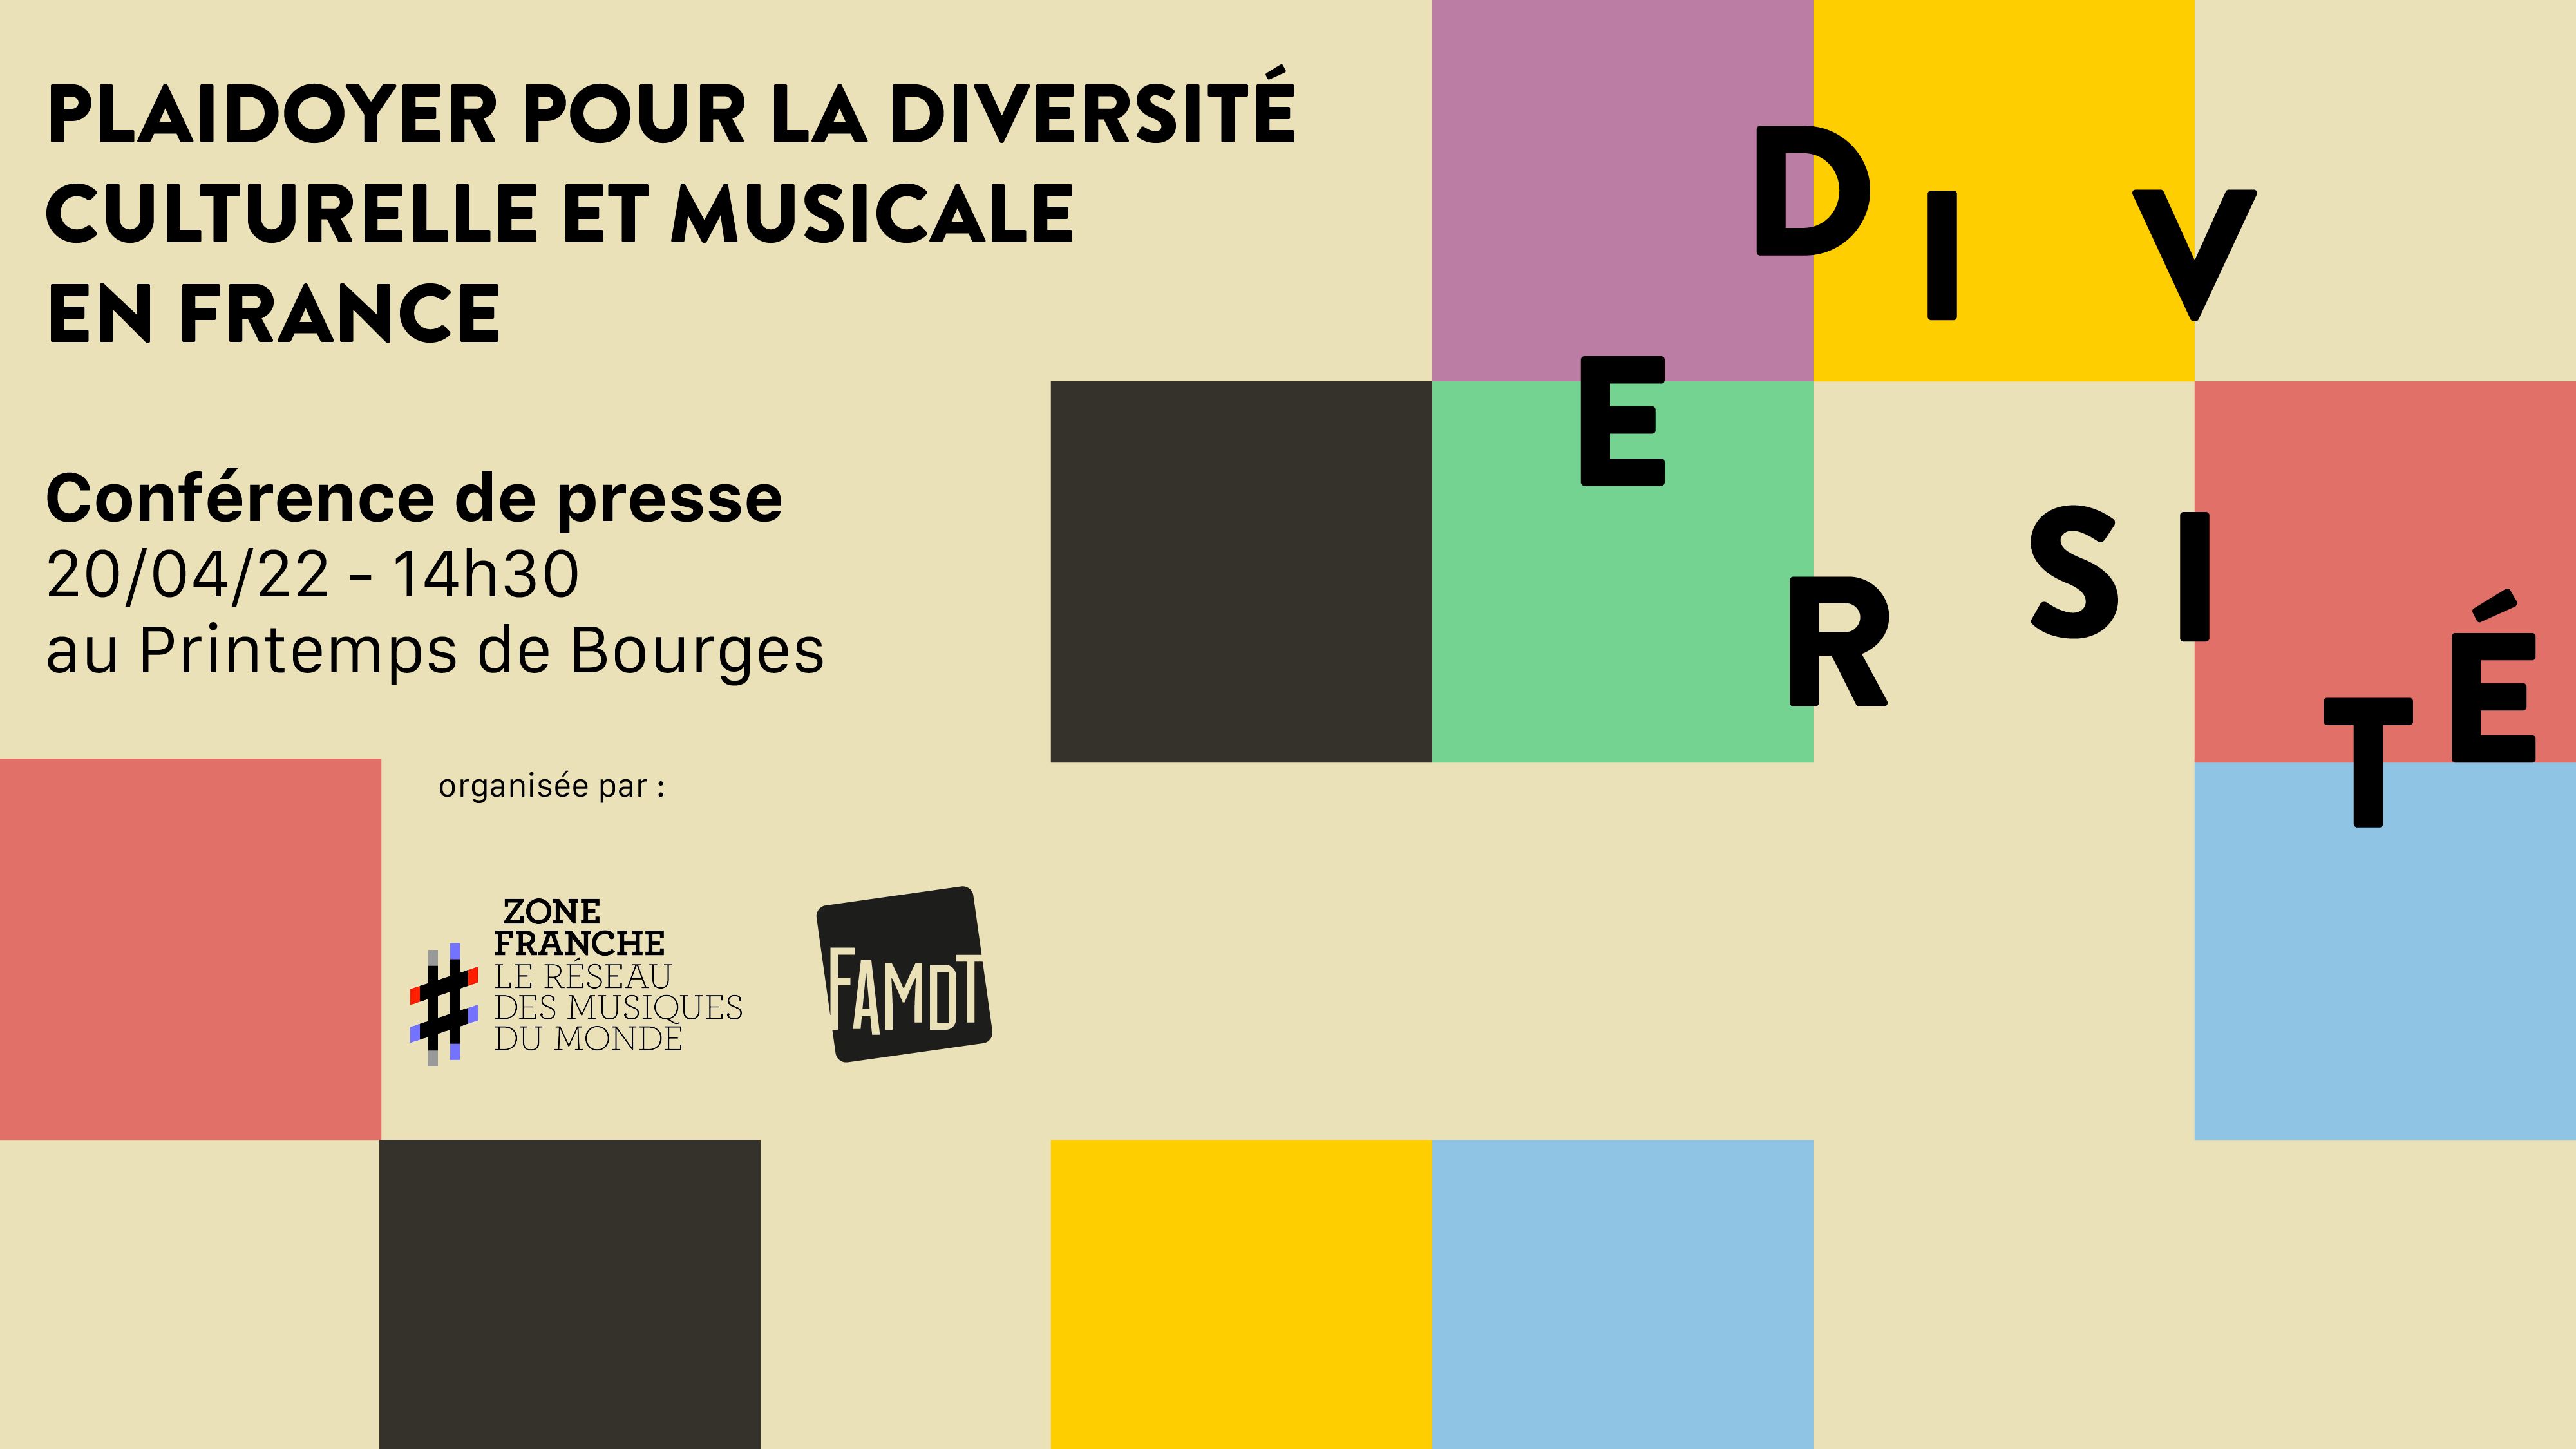 Lire la suite à propos de l’article Conférence de presse « Plaidoyer Diversité culturelle » au Printemps de Bourges avec Zone Franche et la FAMDT